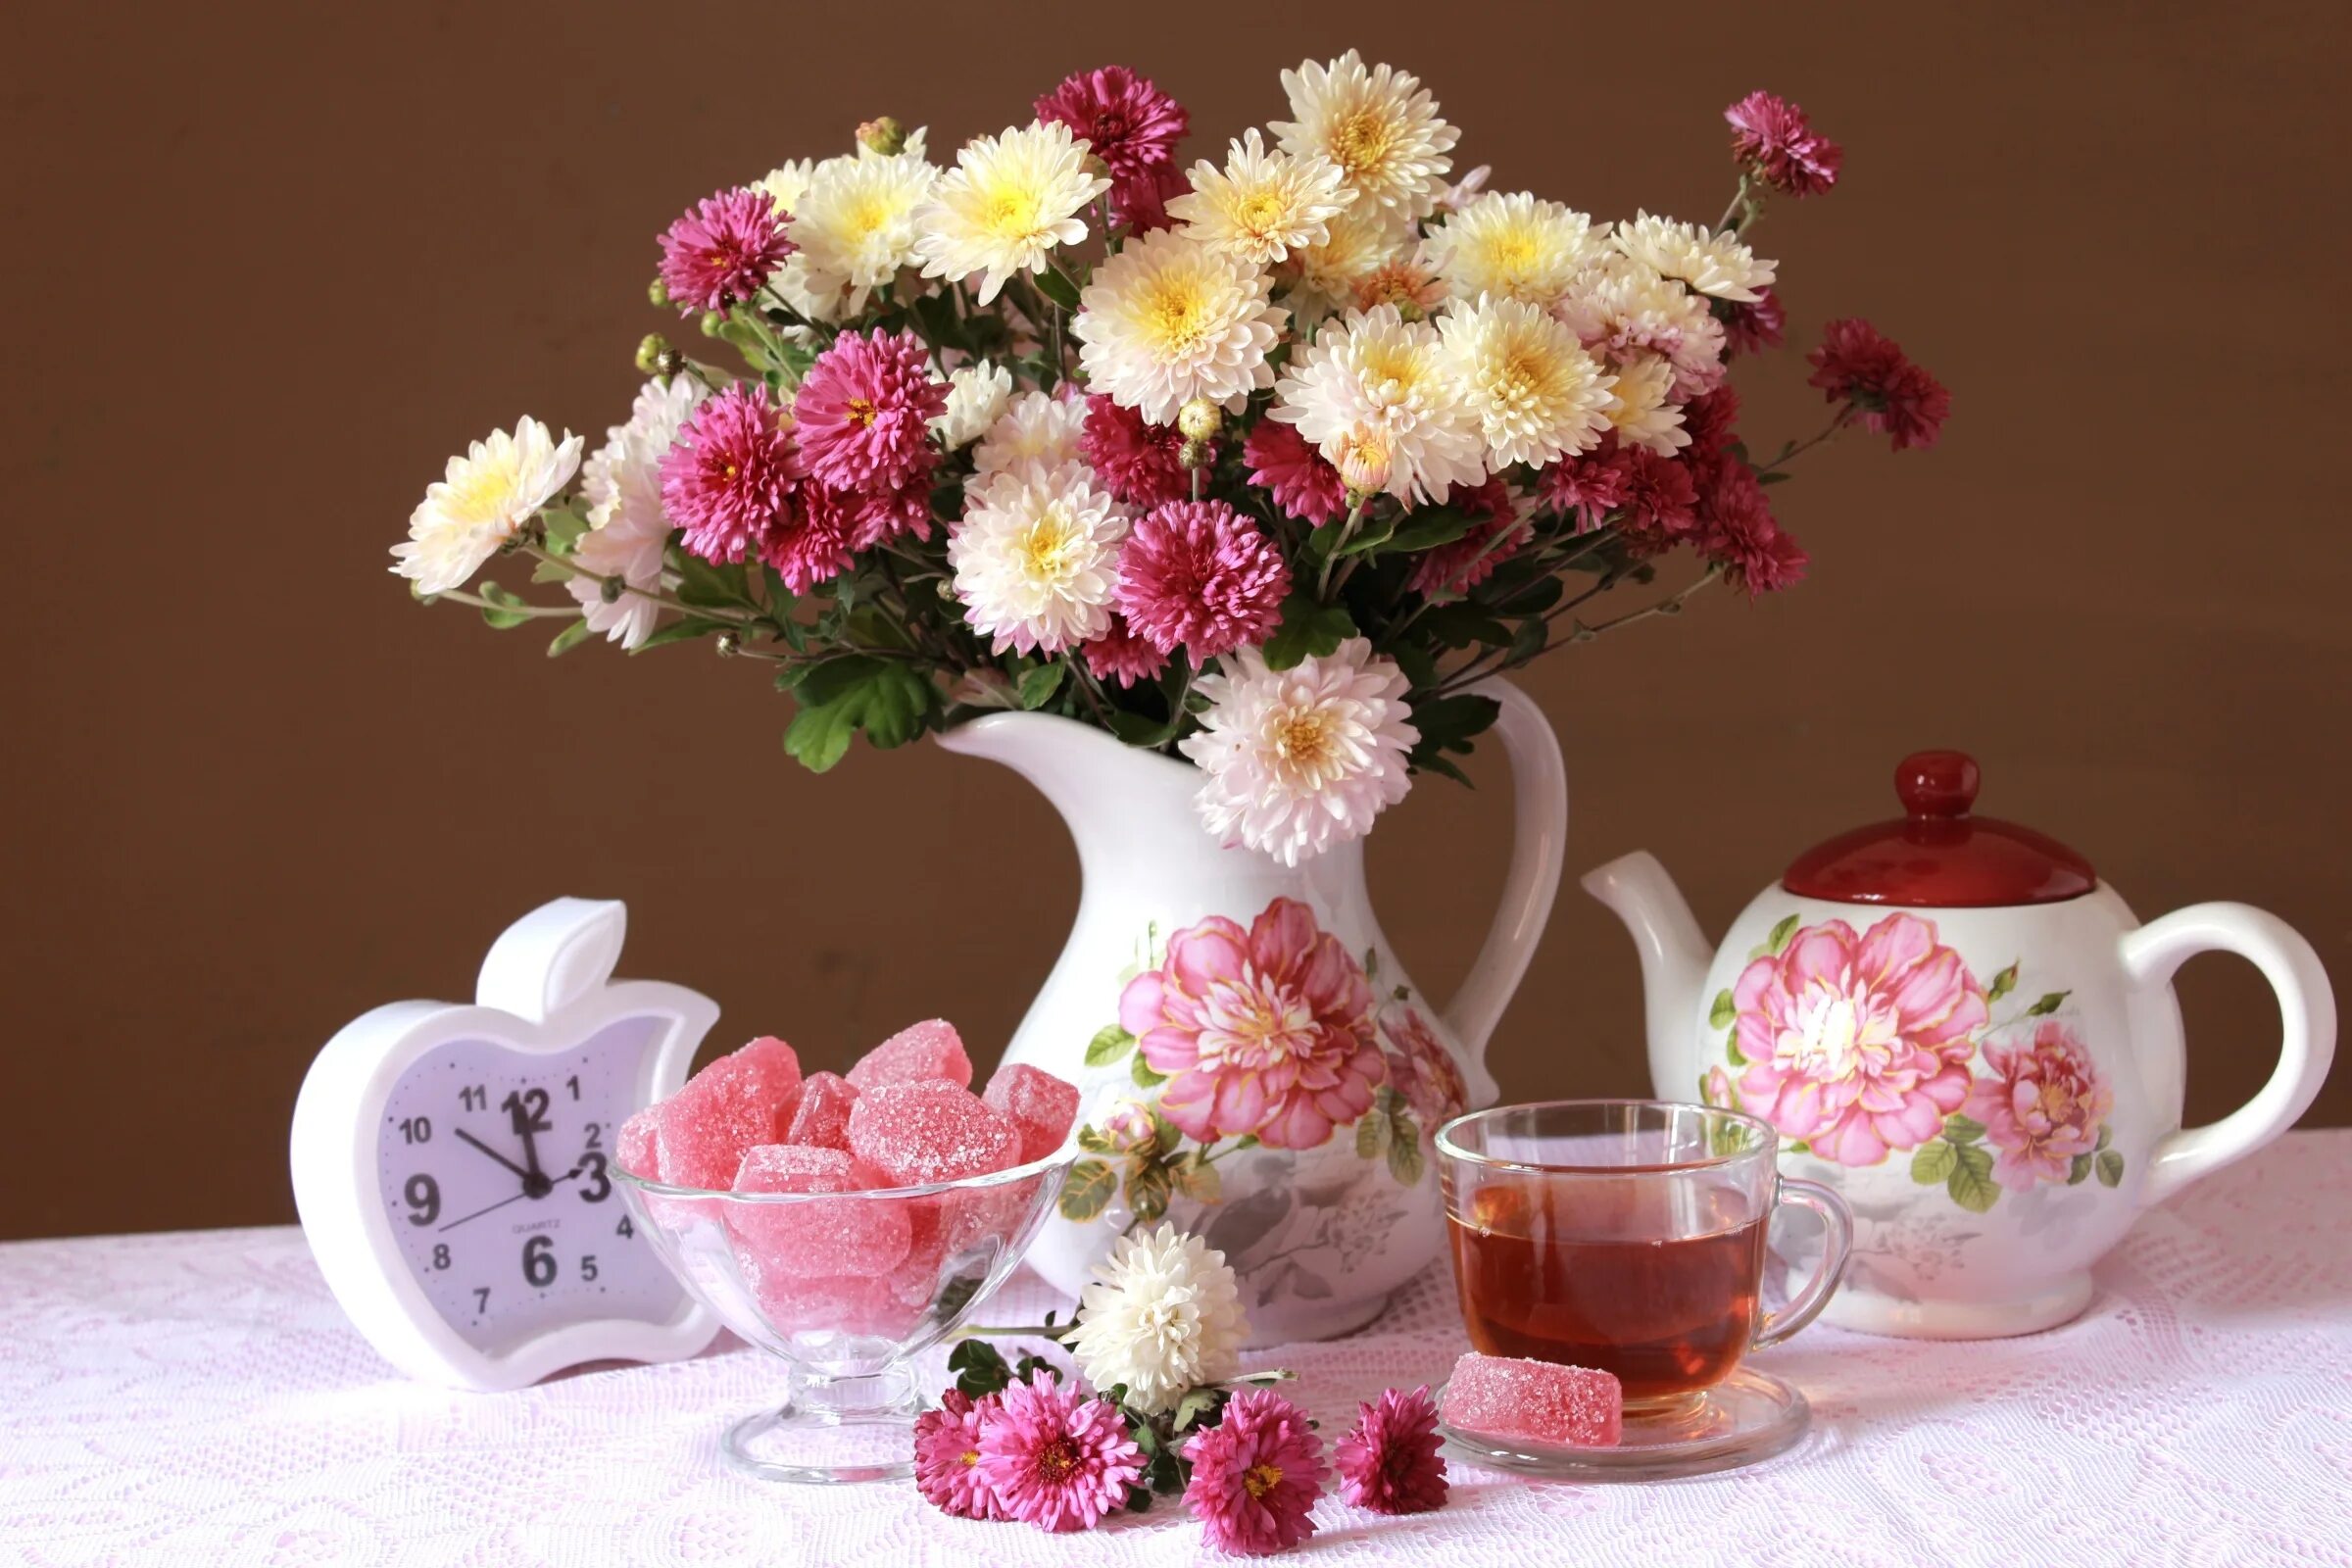 Поздравление доброе утро цветами. Летние цветы в вазе. Утренний букет. Красивые цветы в чашке. Прекрасный утренний букет.